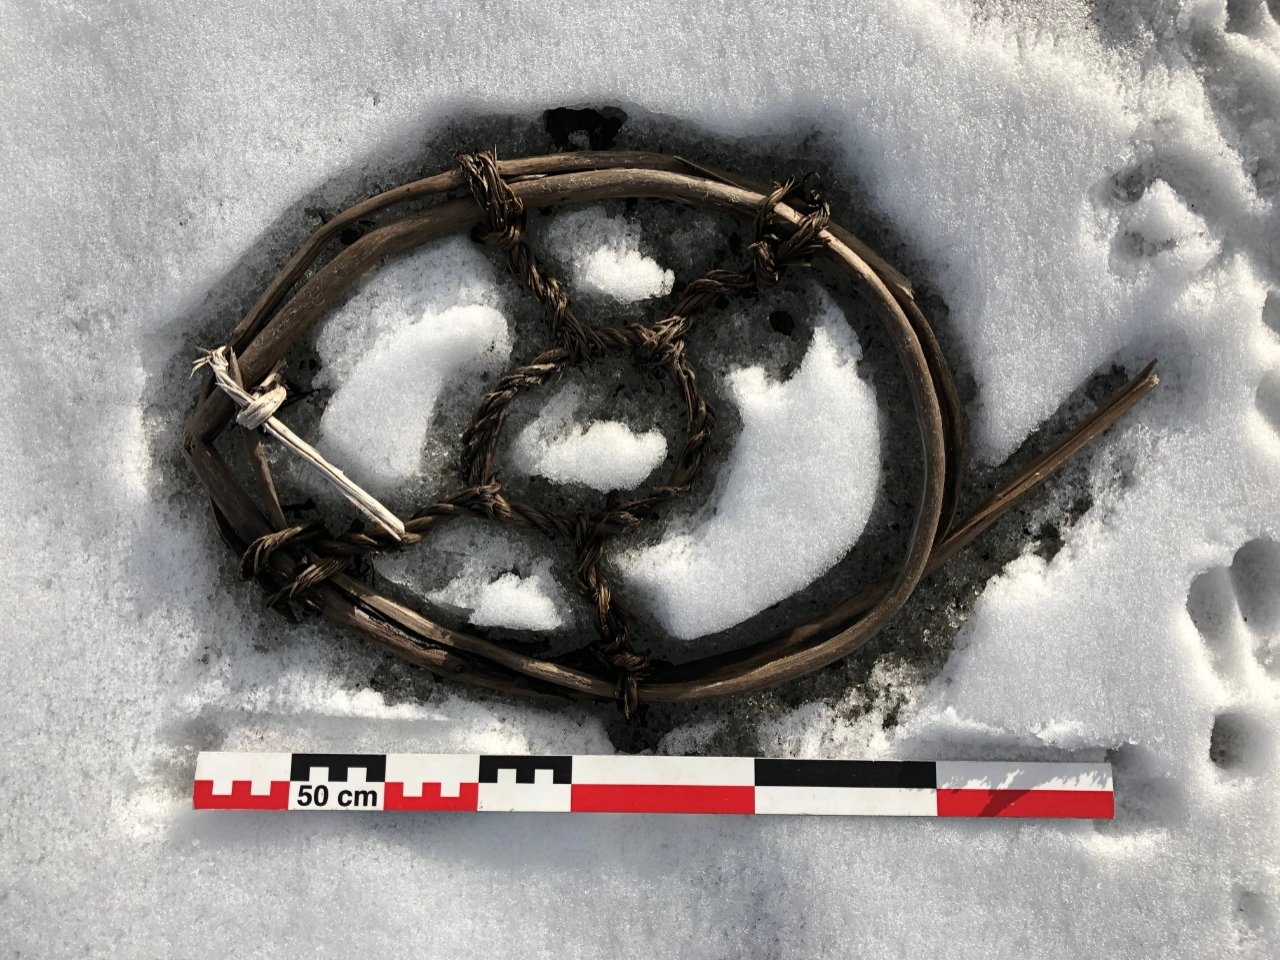 Es yang mencair mengungkap celah era Viking yang hilang dan artefak kuno di Norwegia 4